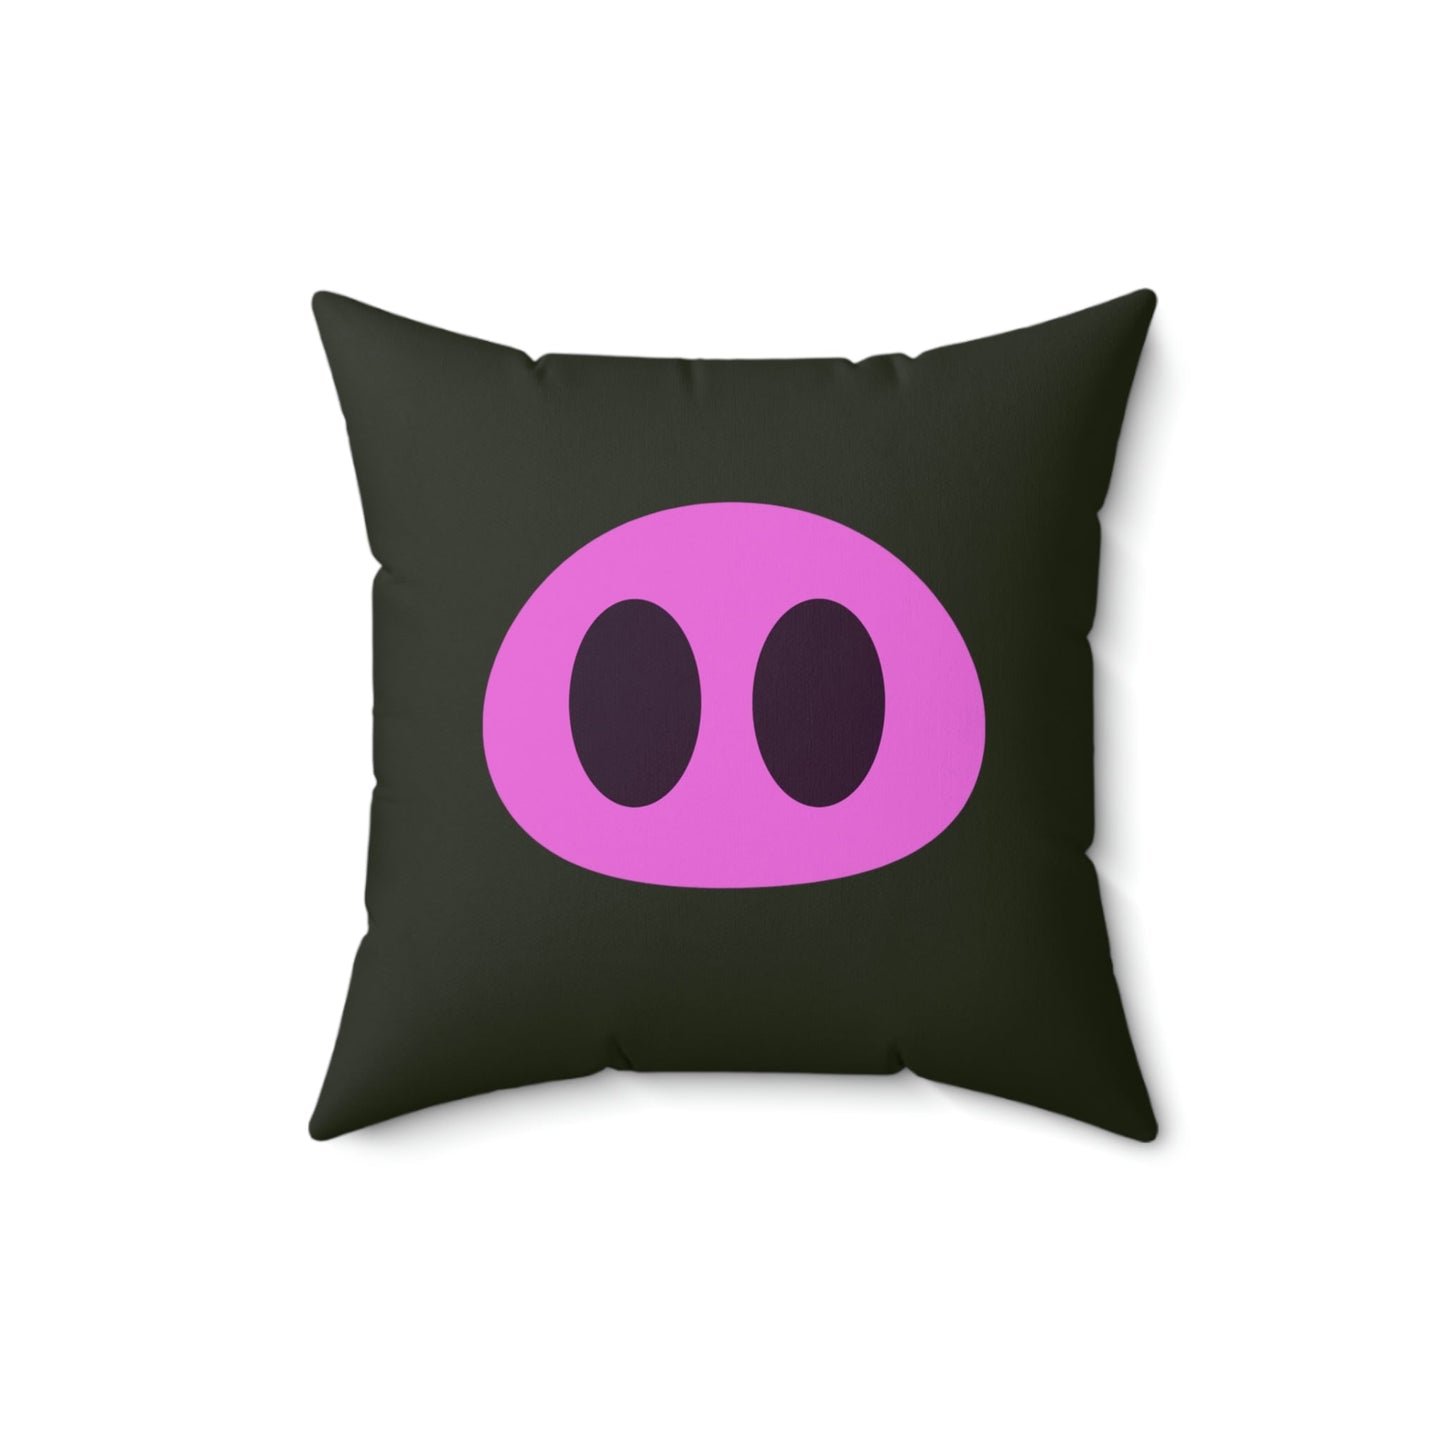 Pig Snout Square Pillow